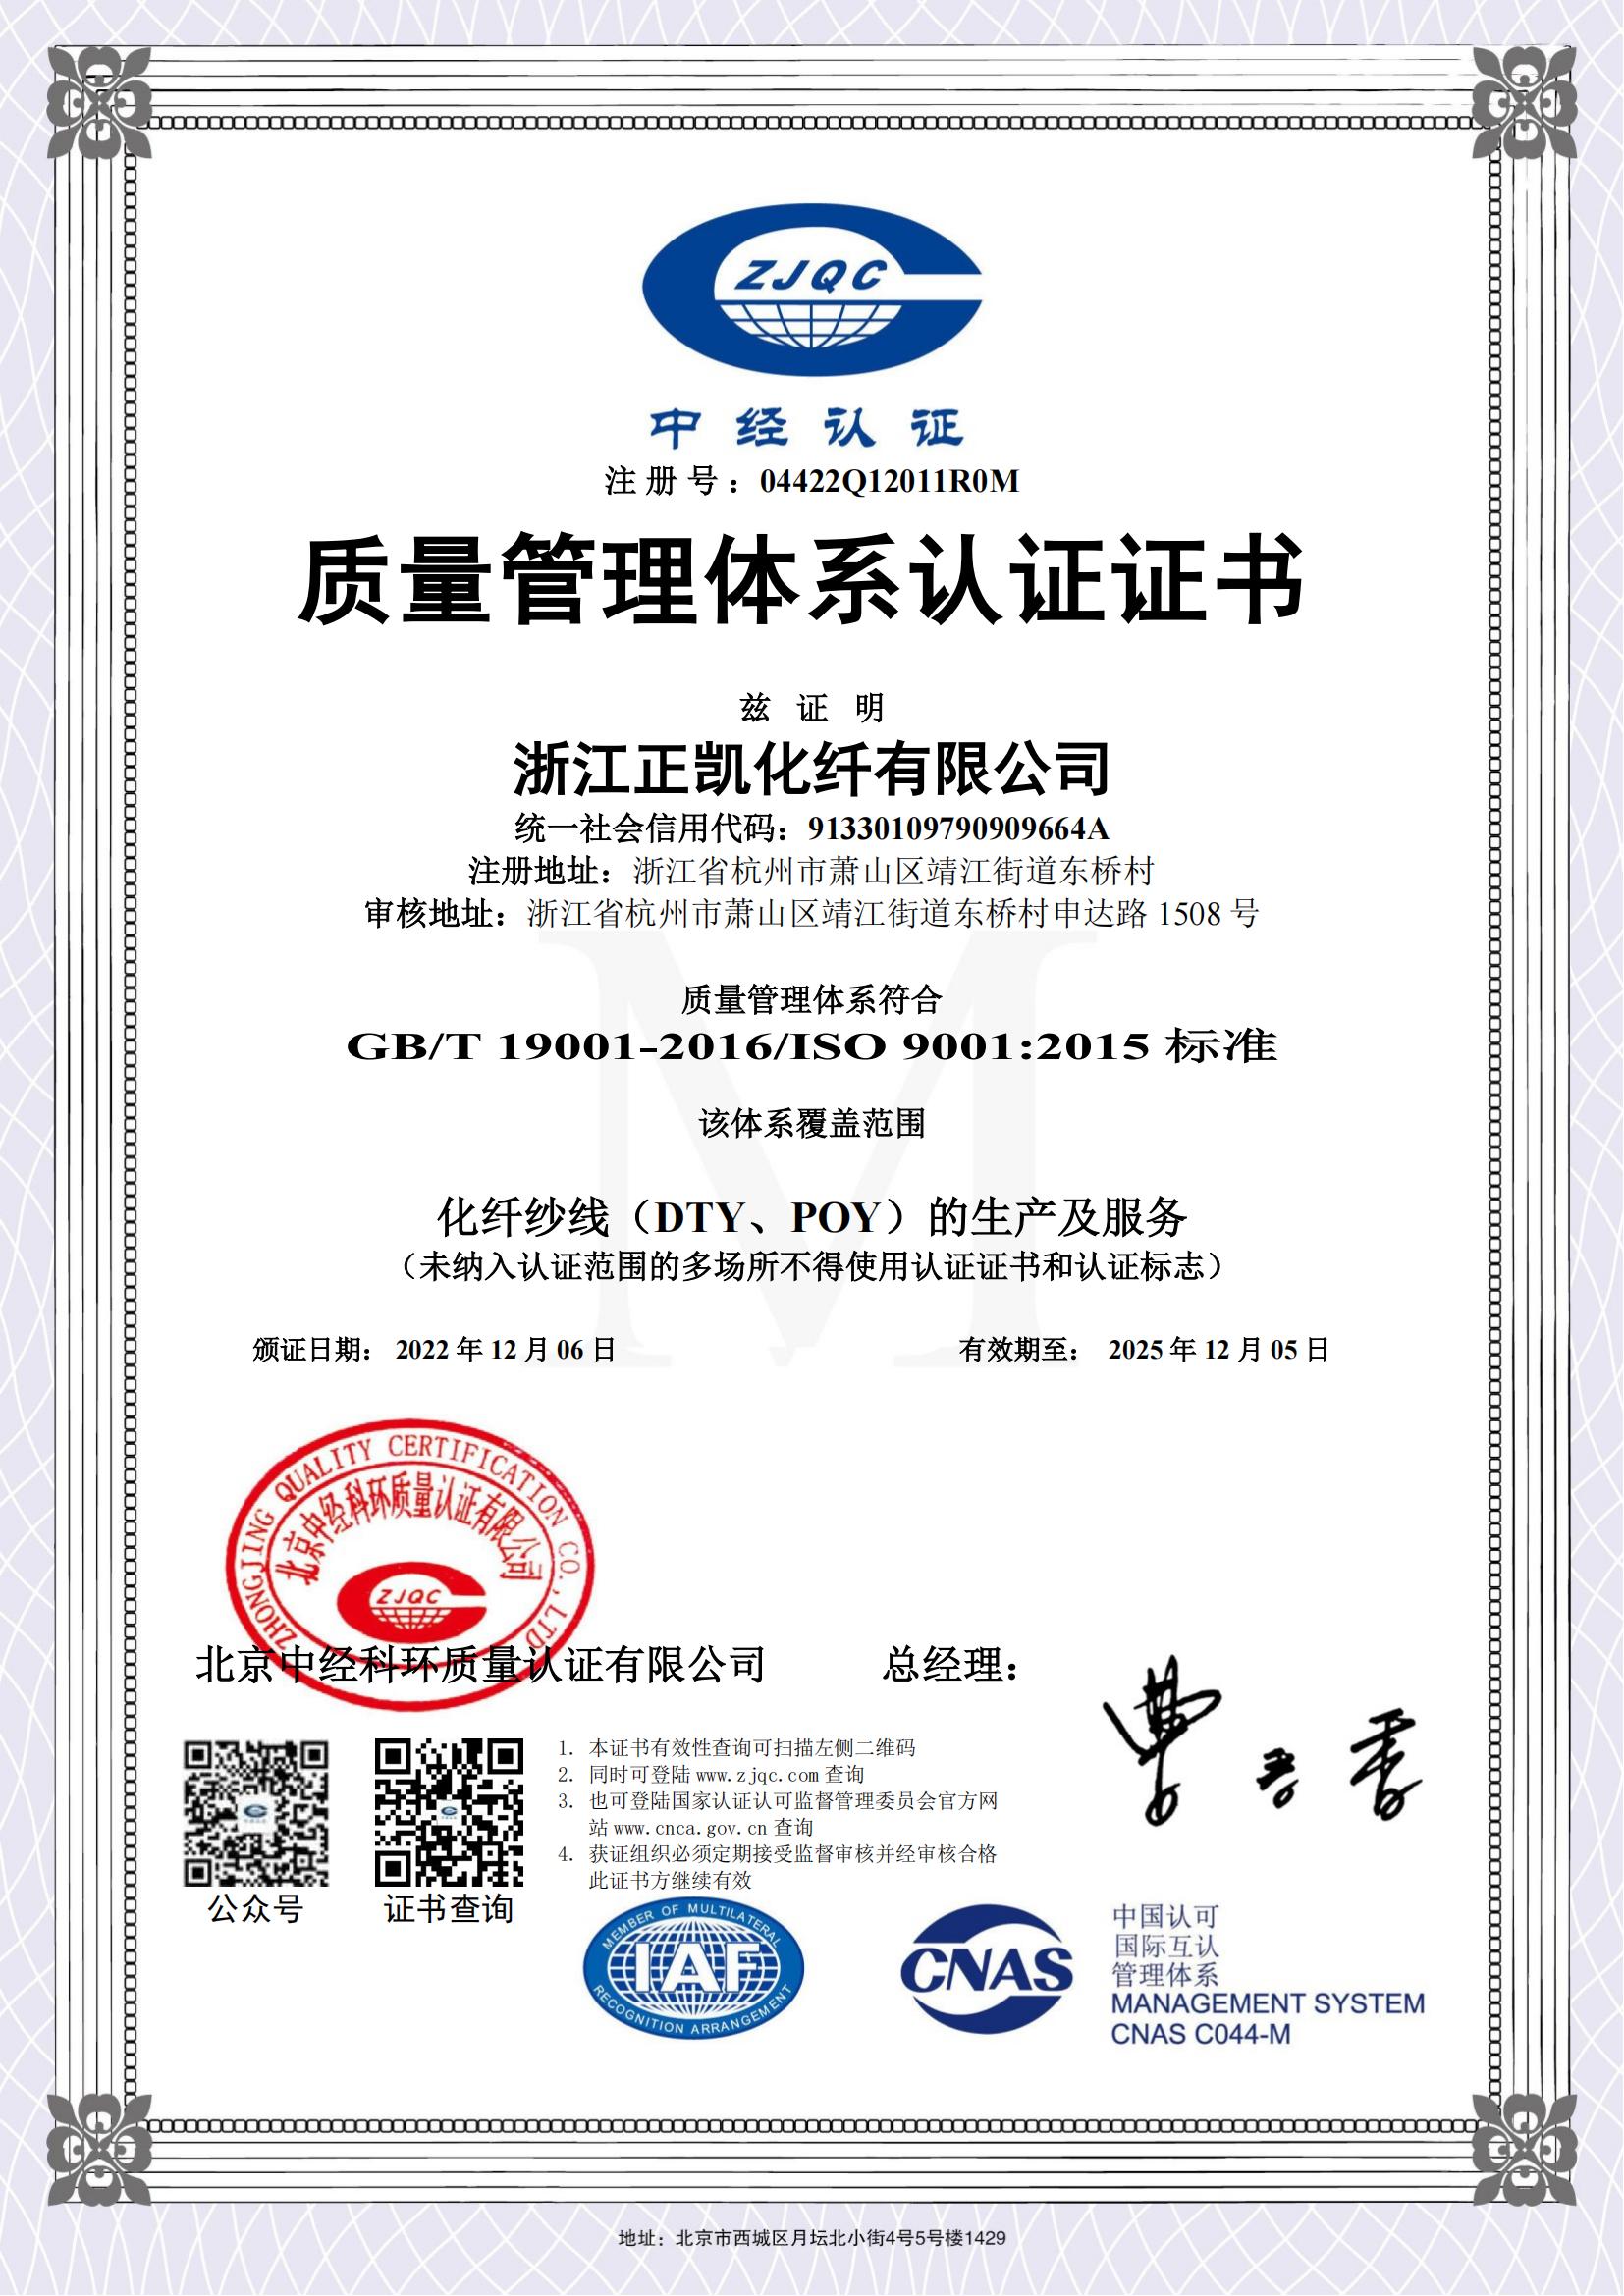 正凯化纤质量管理体系认证证书